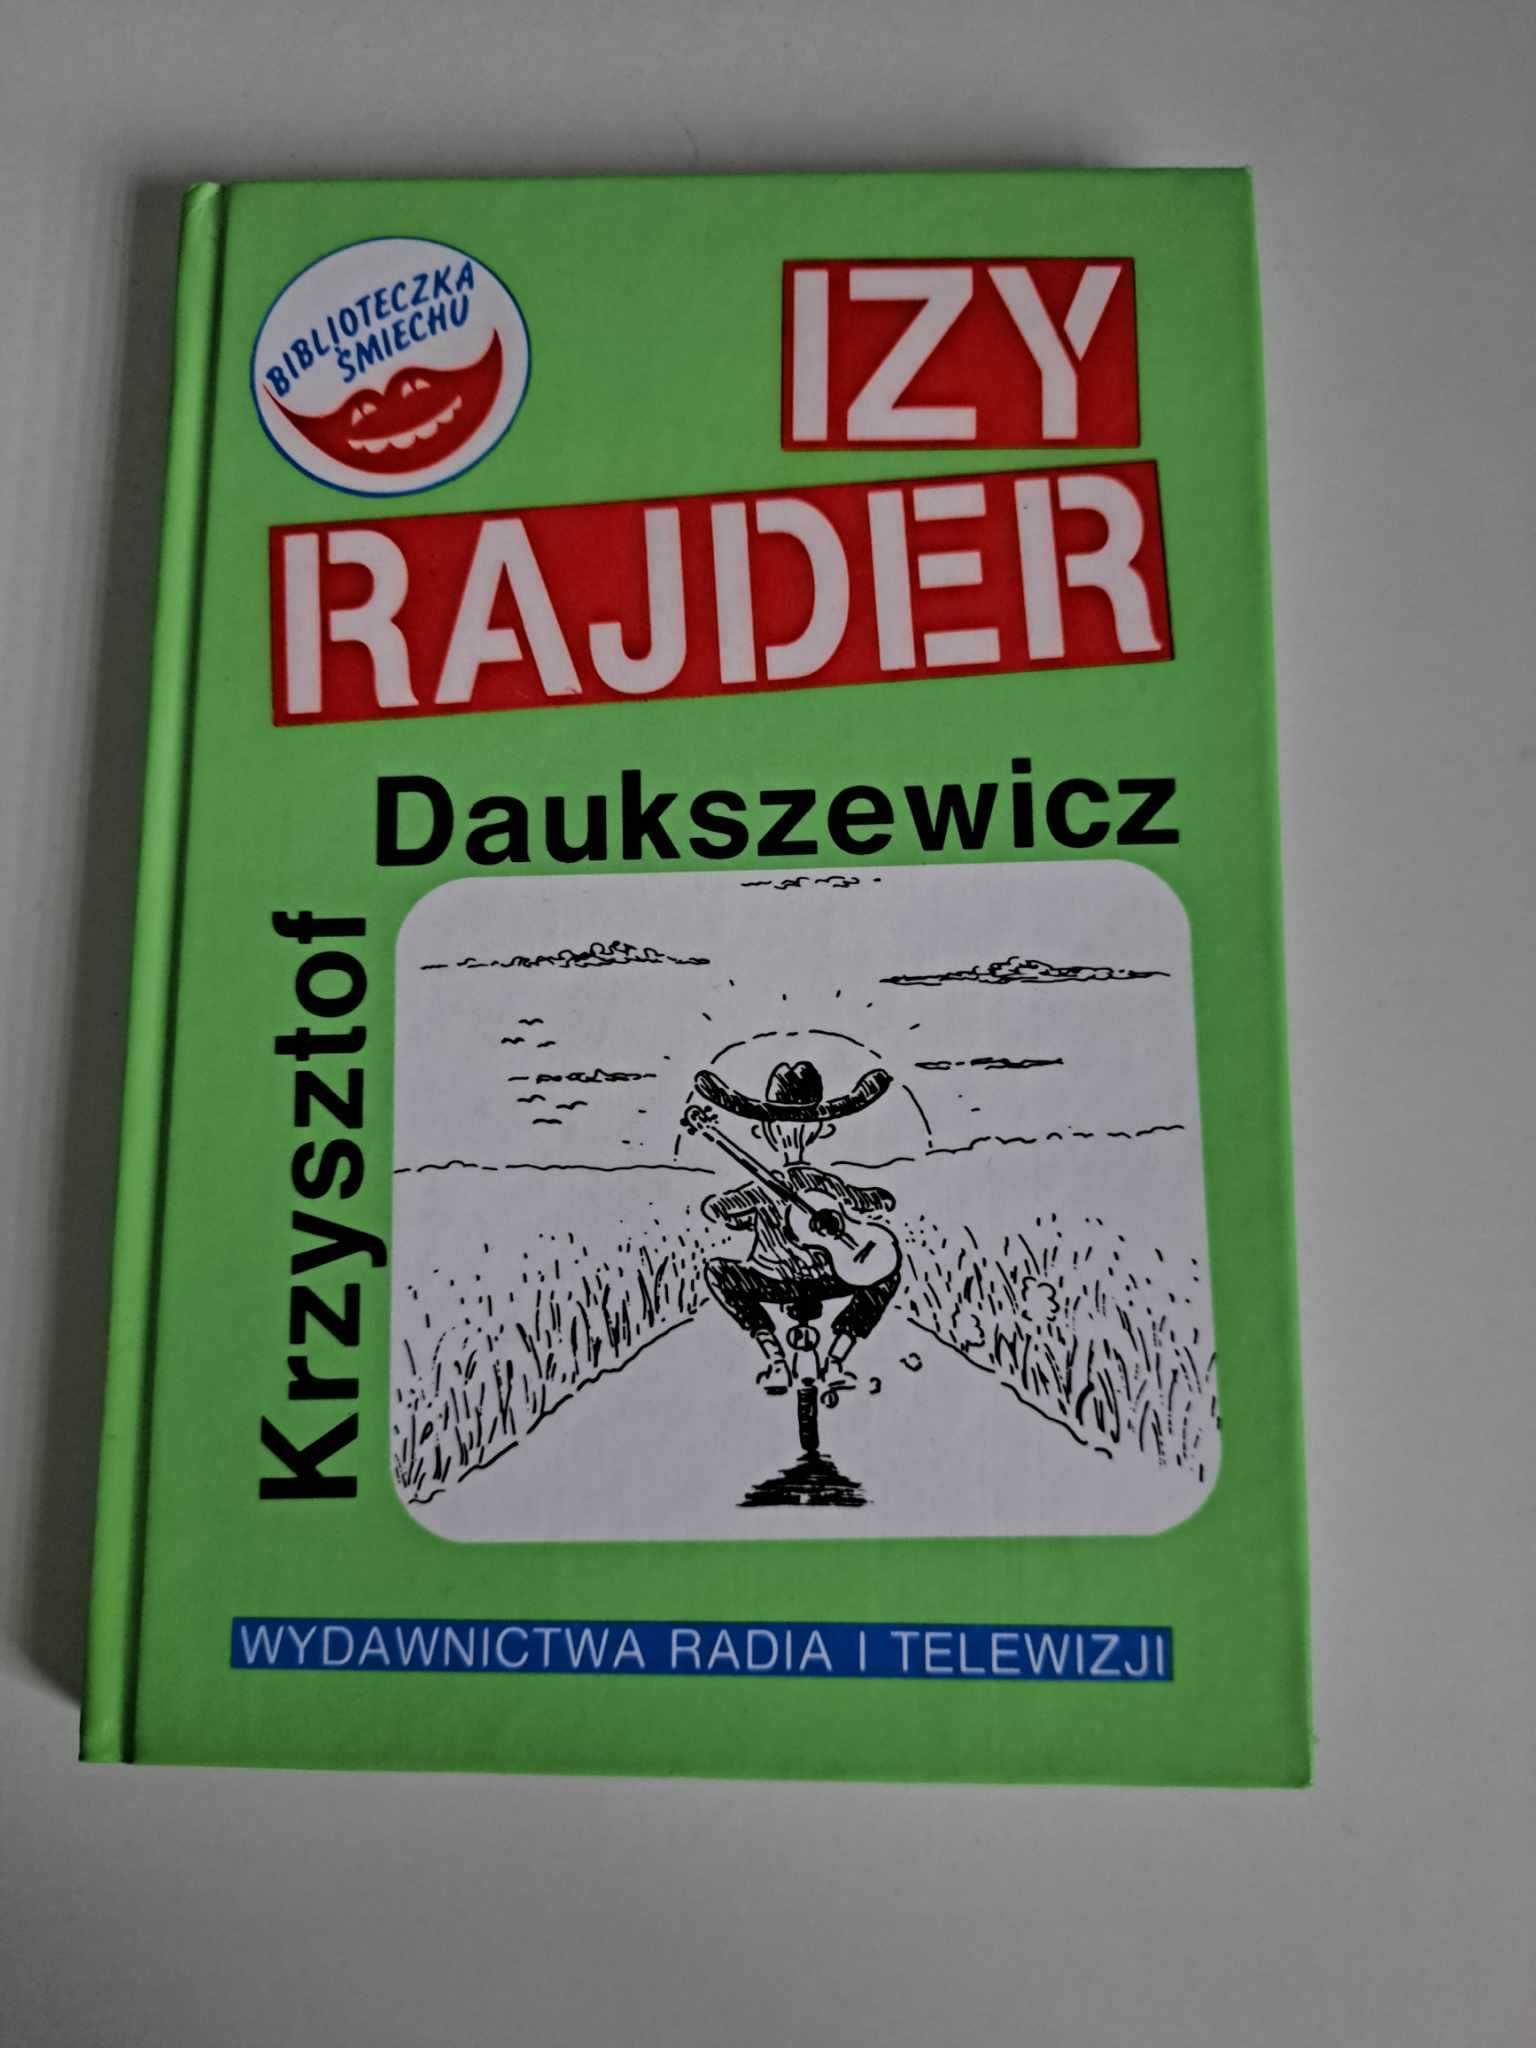 Izy rajder czyli Pieszy jeździec Krzysztof Daukszewicz